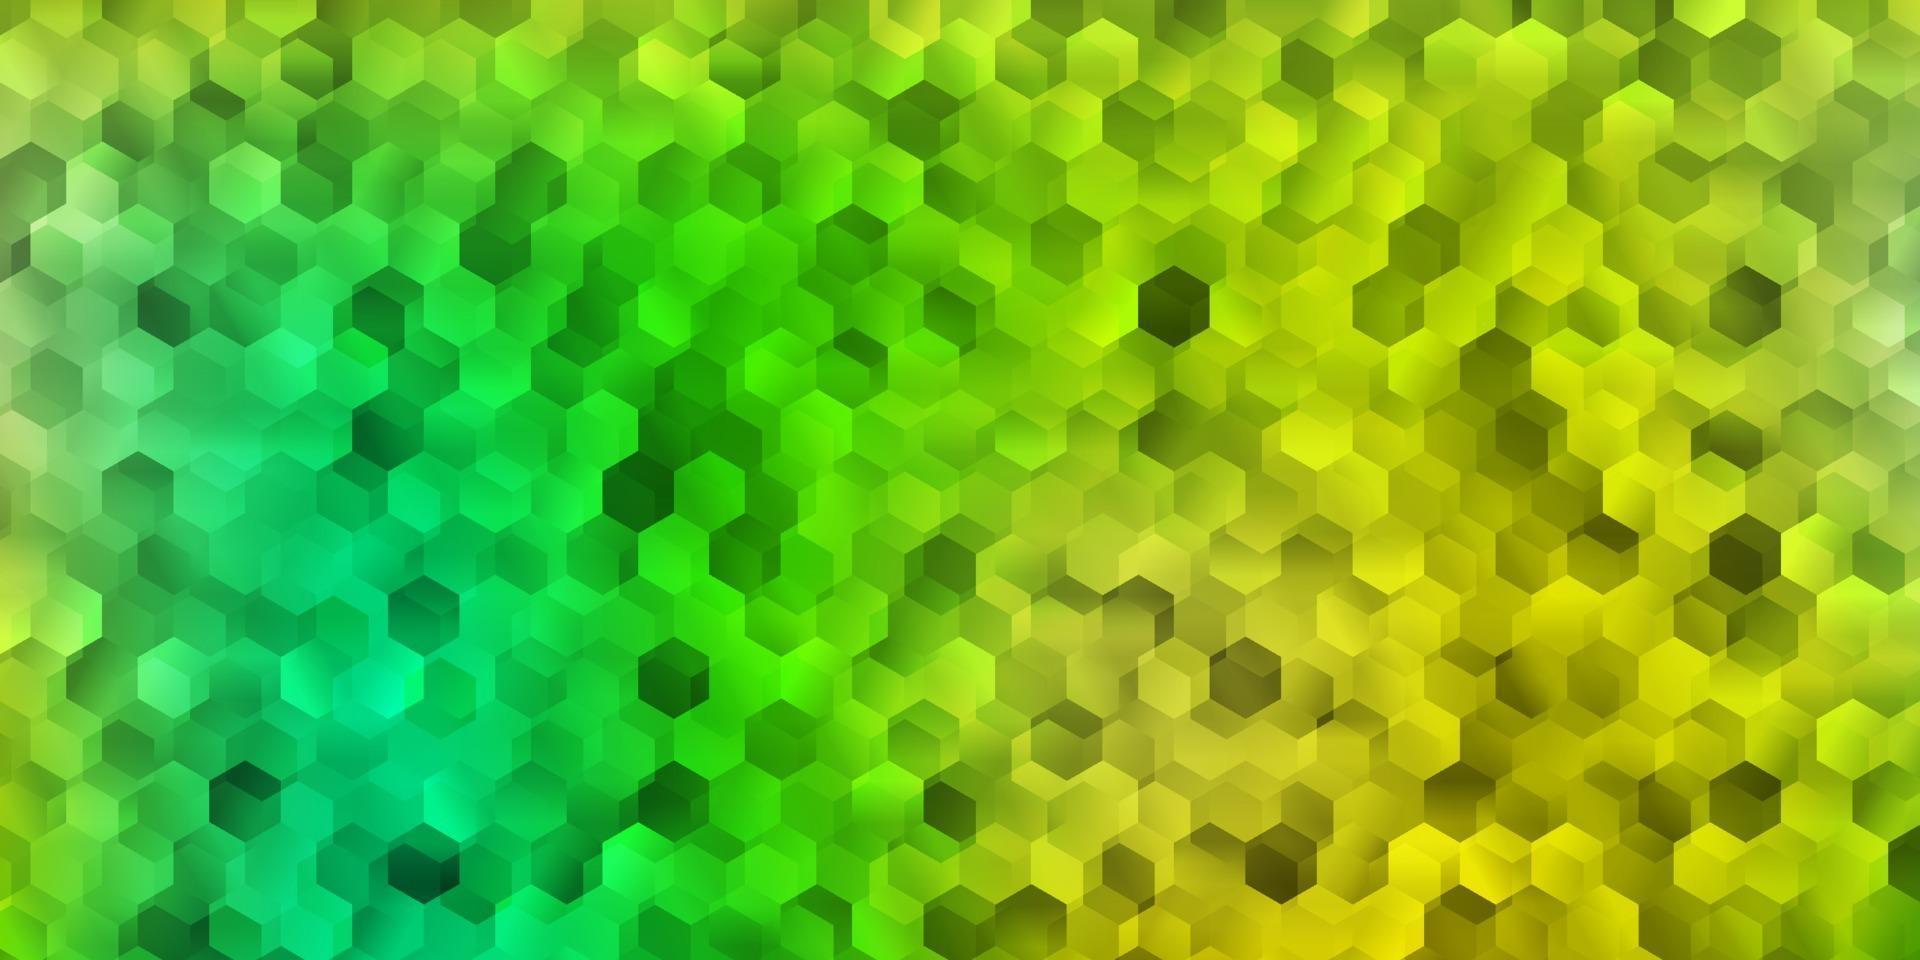 diseño de vector verde claro, amarillo con formas de hexágonos.